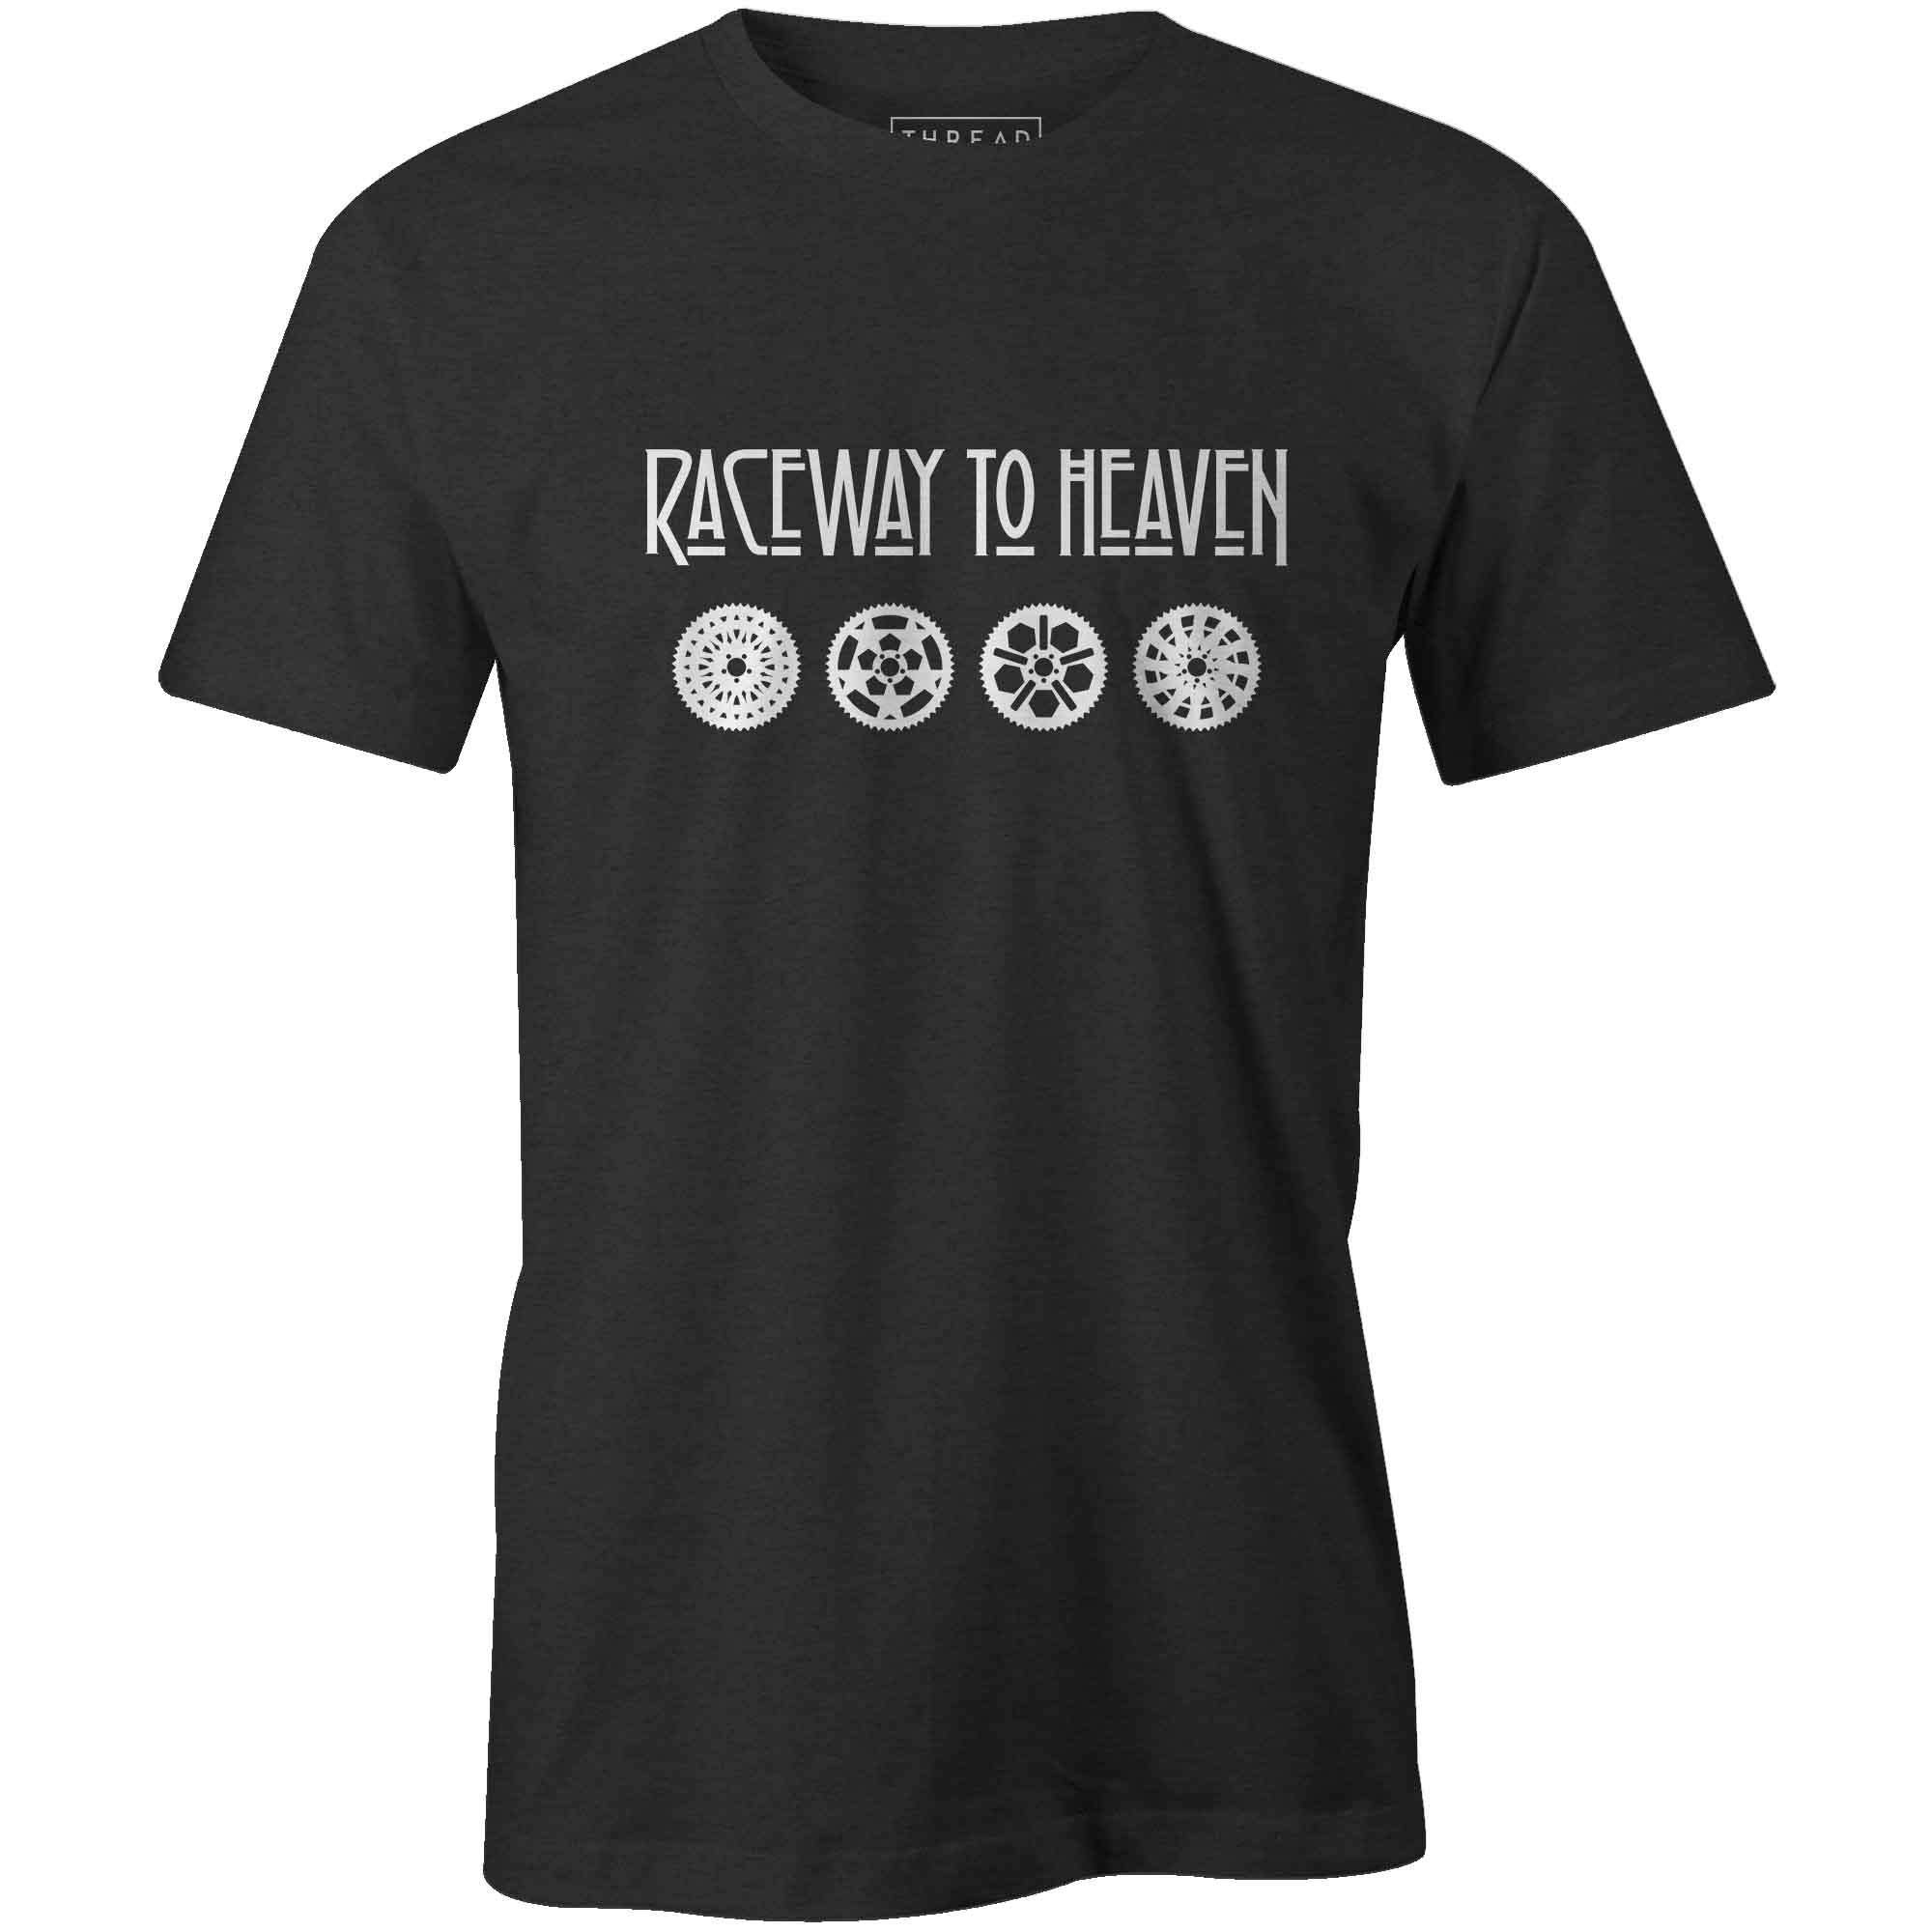 Men's T-shirt - Raceway To Heaven